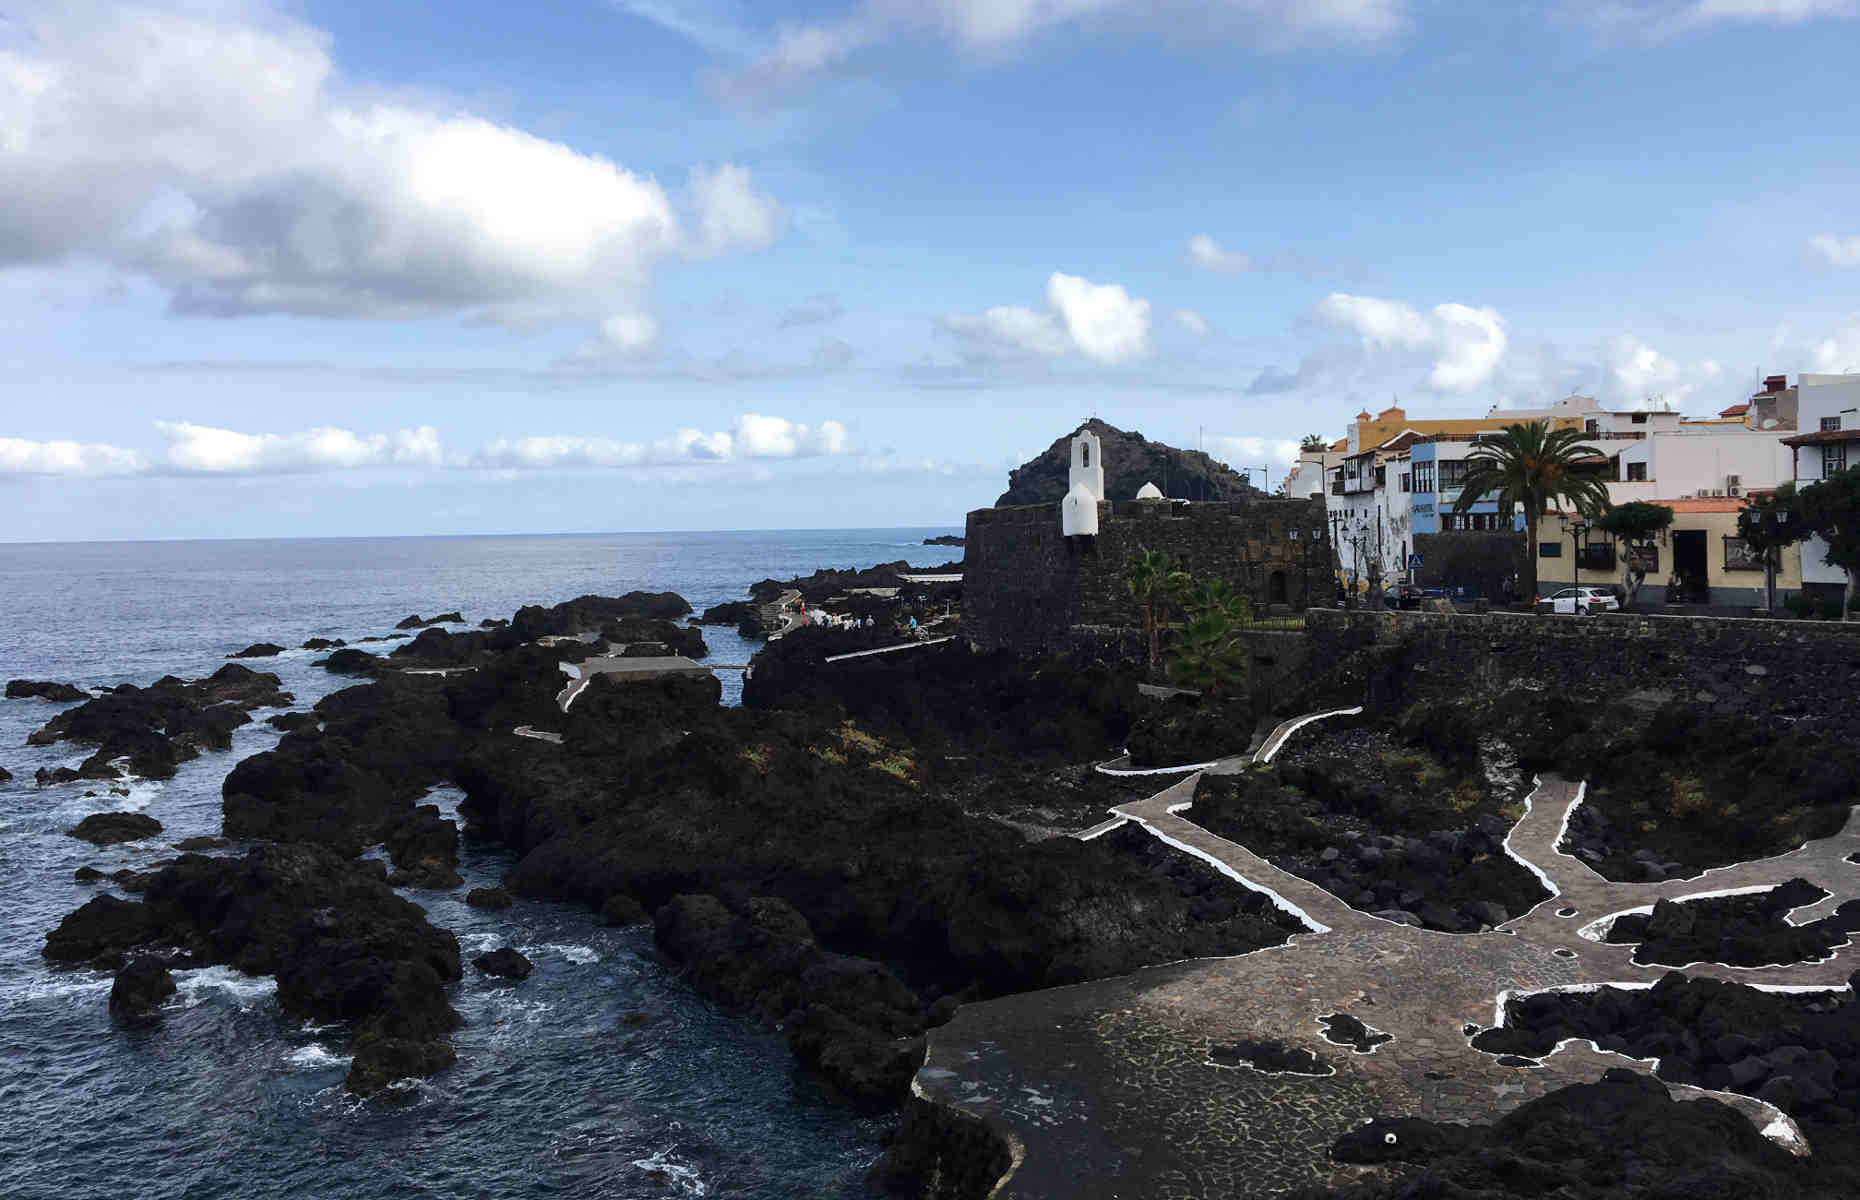 Piscines naturelles Garachico - Voyage Tenerife, Canaries - Espagne